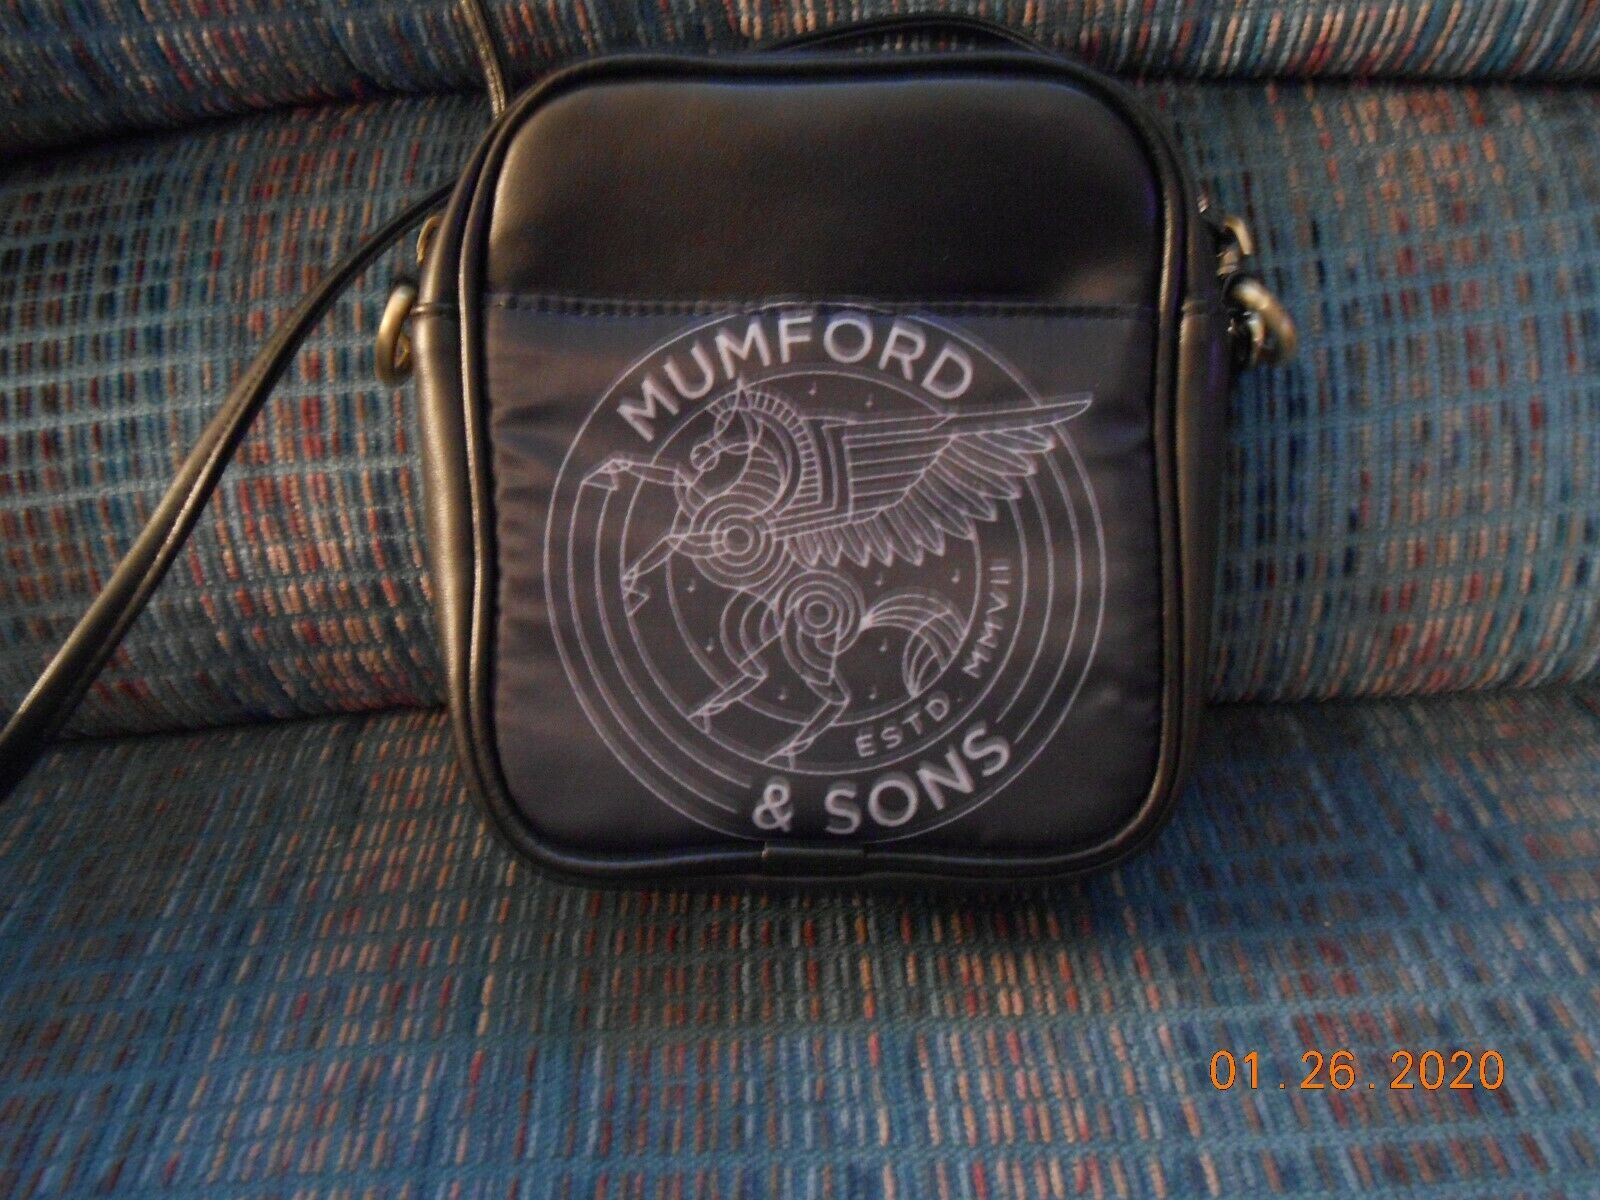 Mumford & Sons Pegasus Logo Small Black Purse Bag Case New